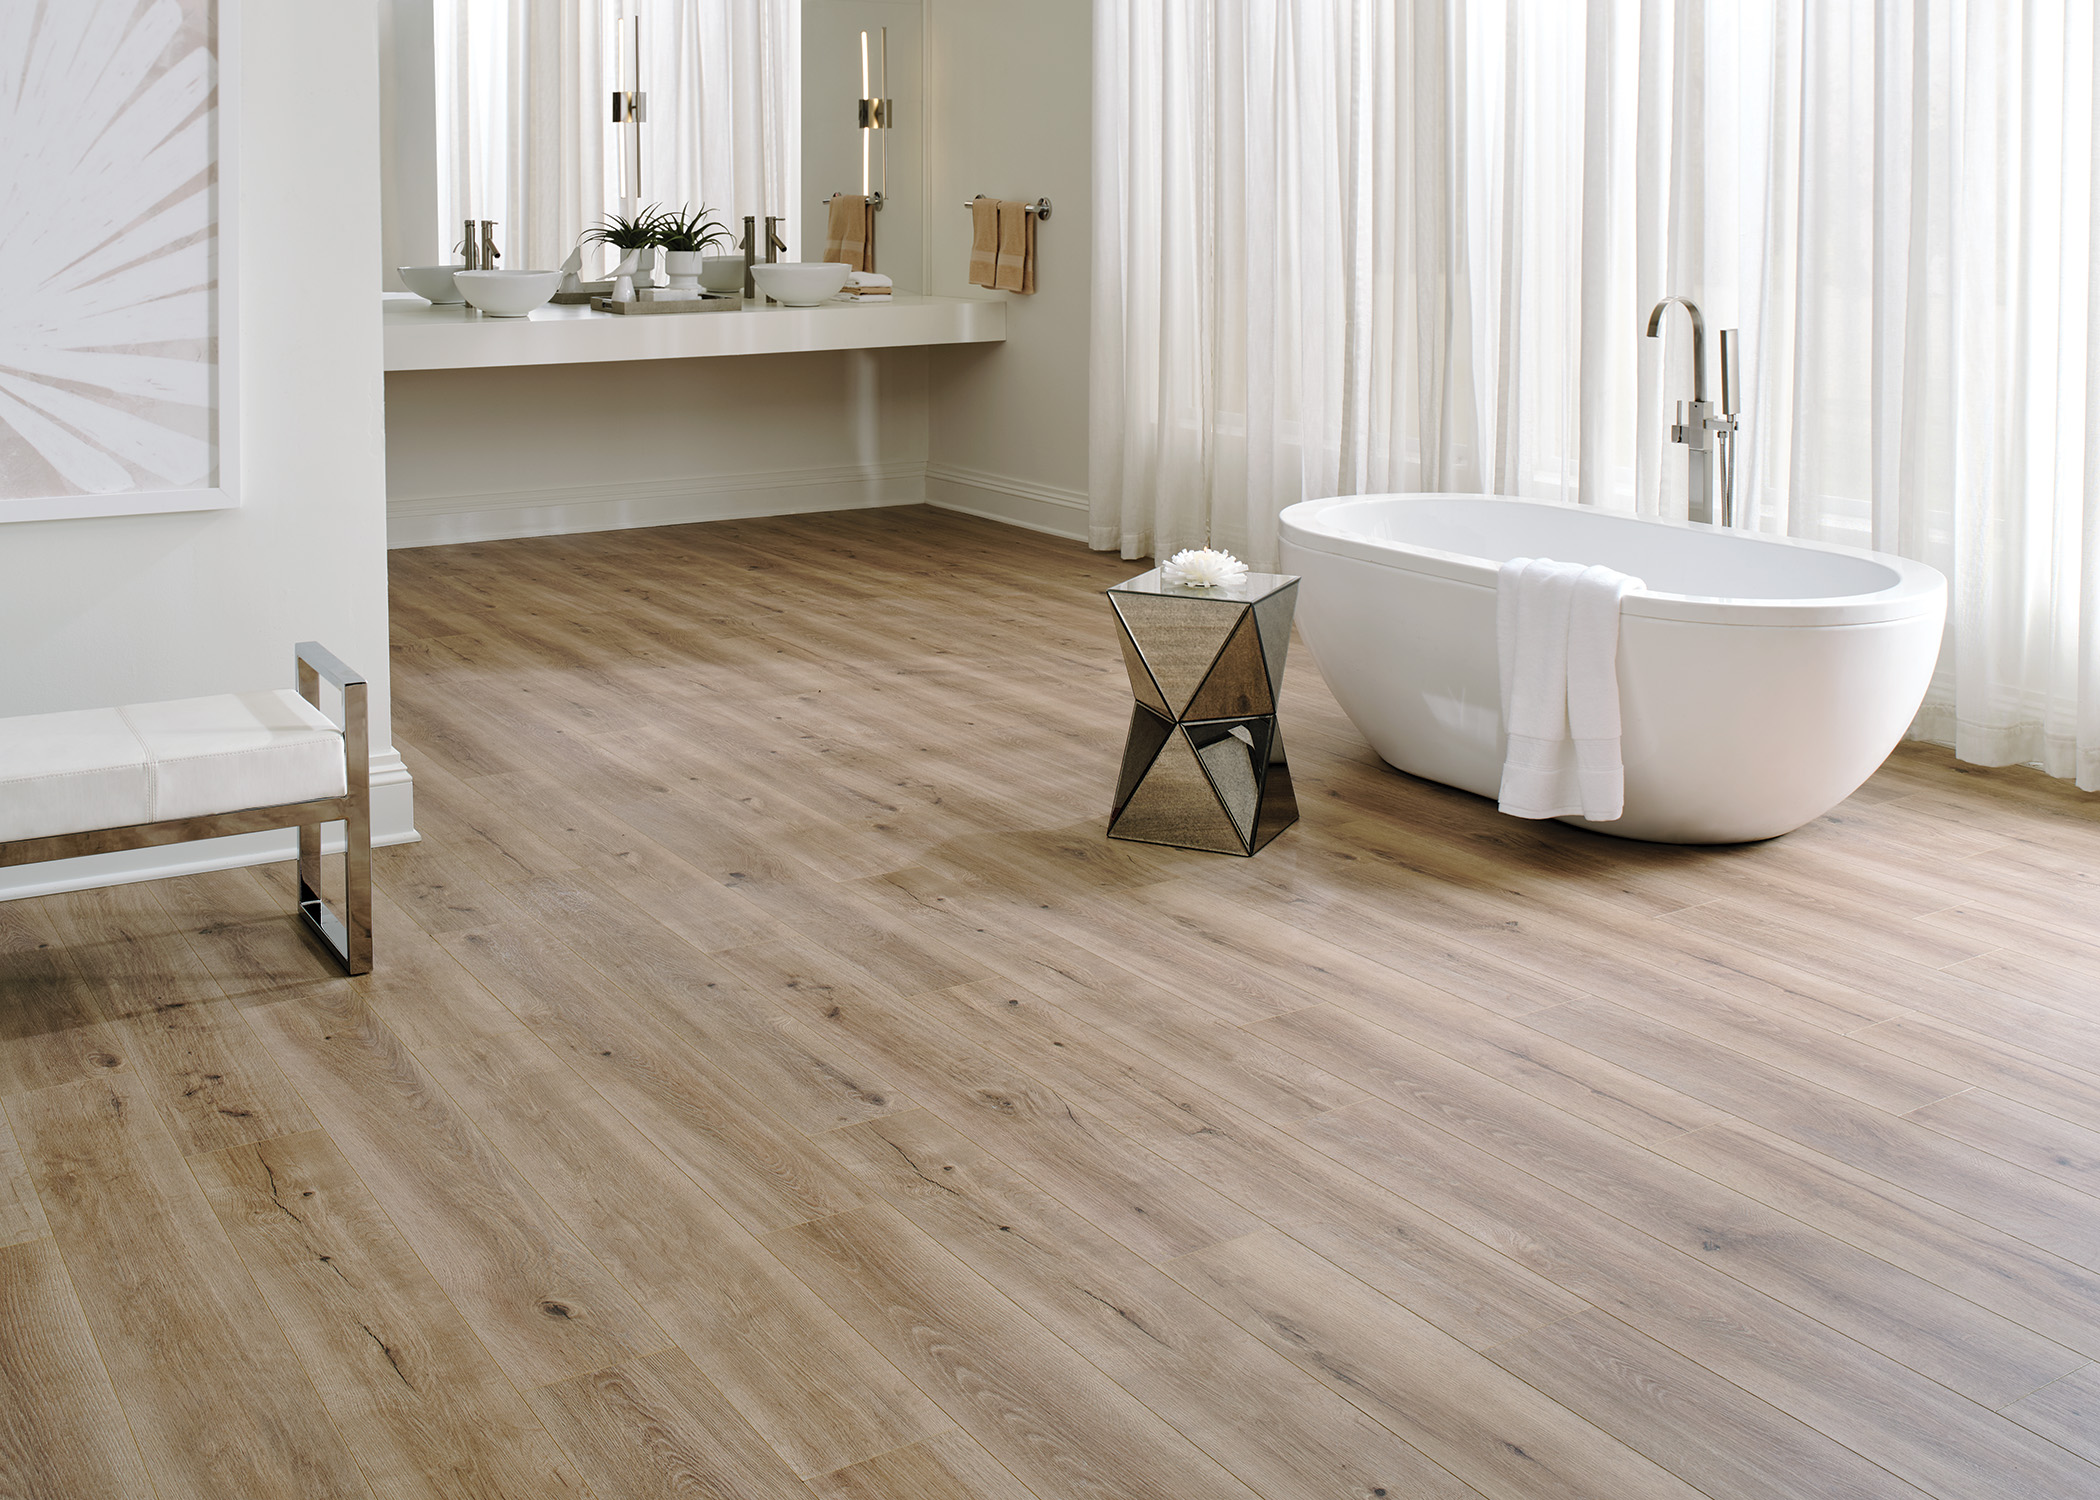 light brown waterproof hybrid resilient floor in bathroom with oval freestanding bathtub and floating vanity